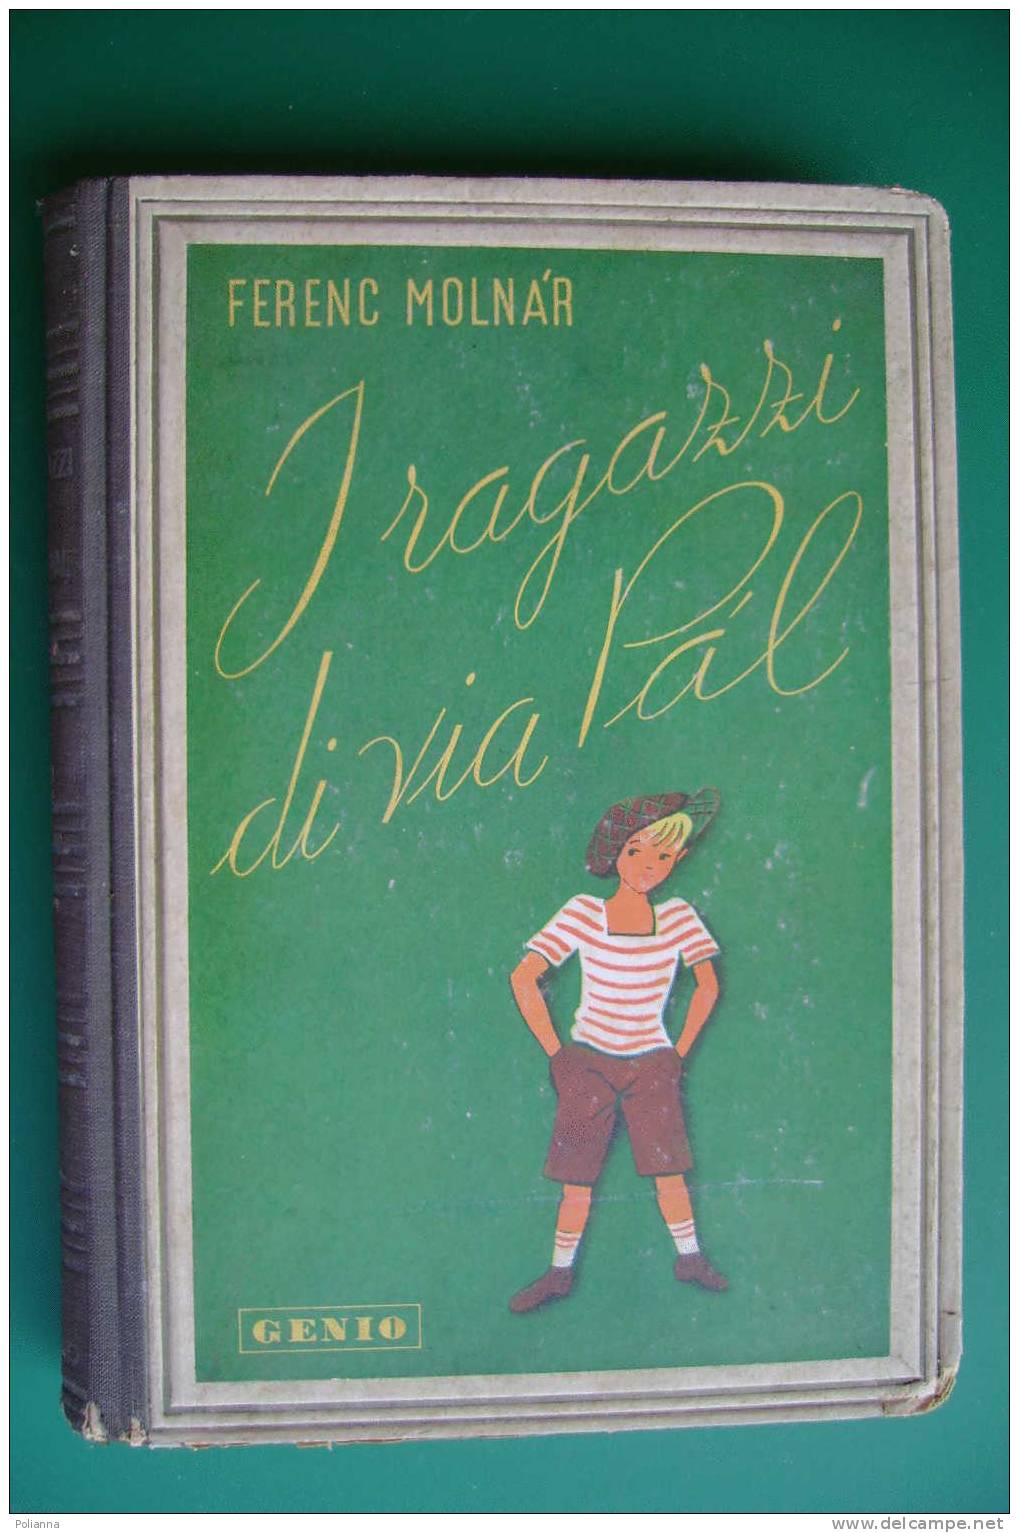 PDC/40 Ferenc Molnar I RAGAZZI DI VIA PAL Genio 1945/illustrato - Oud